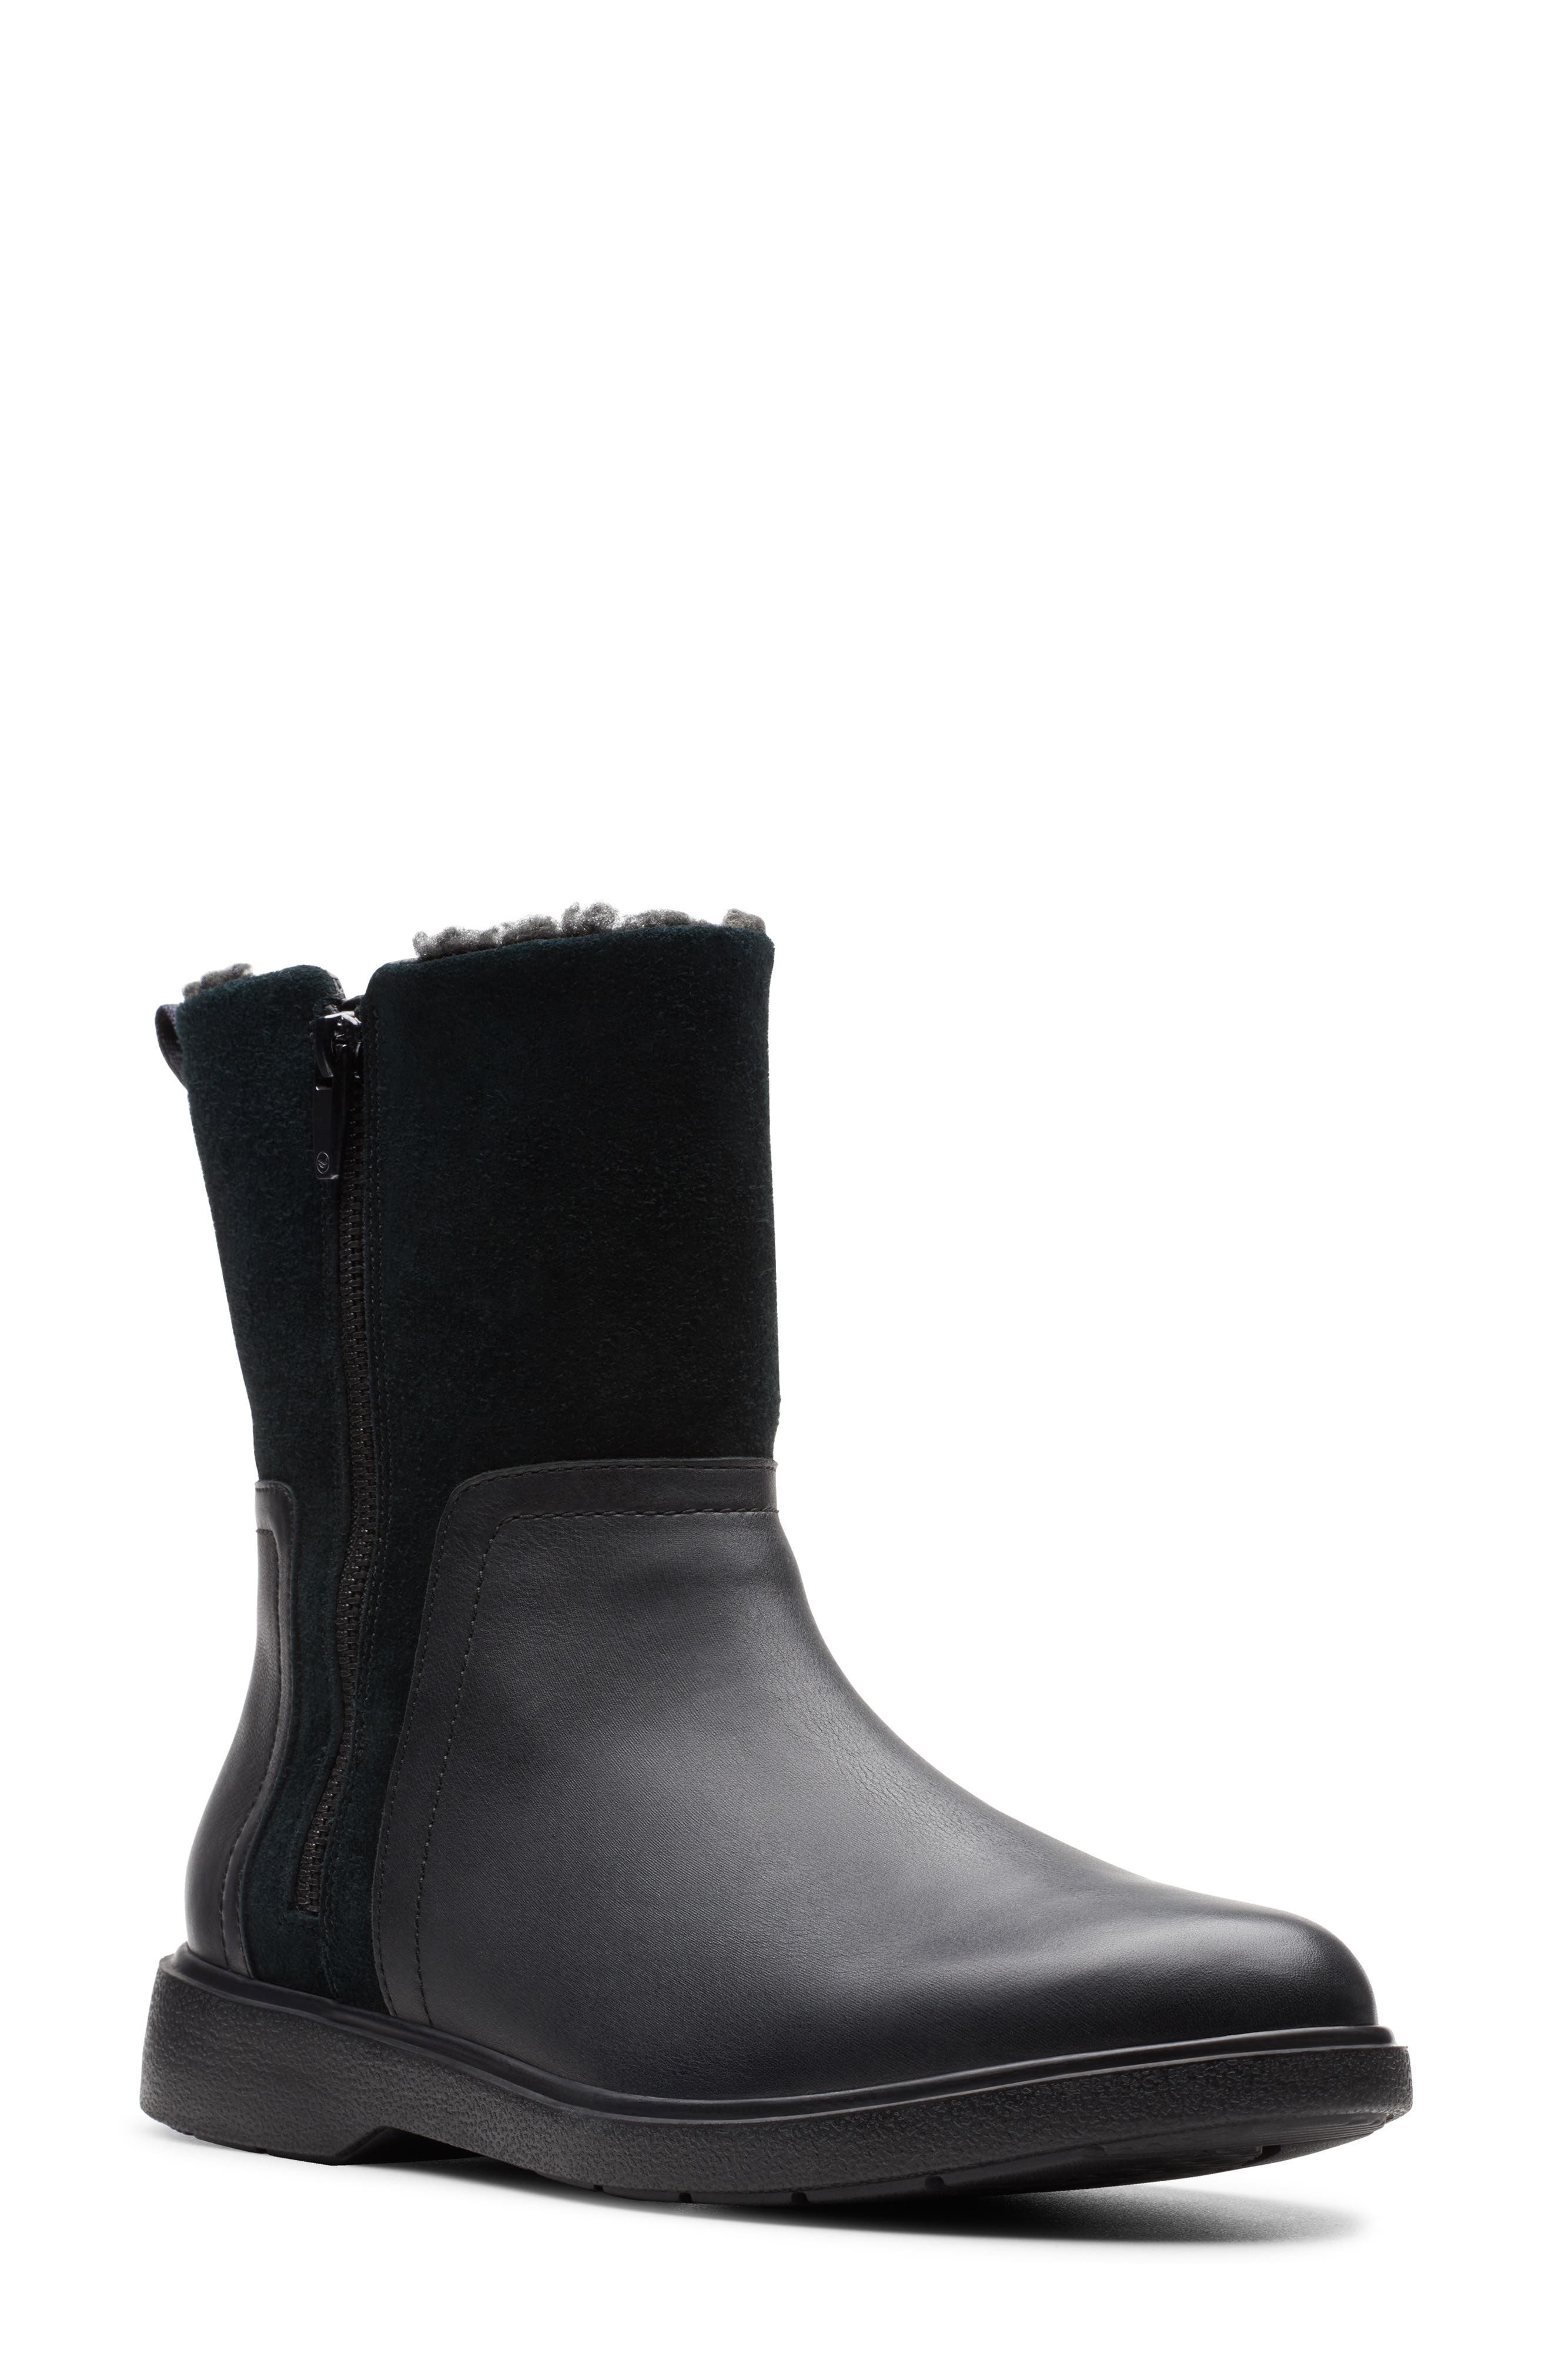 clarks waterproof boots